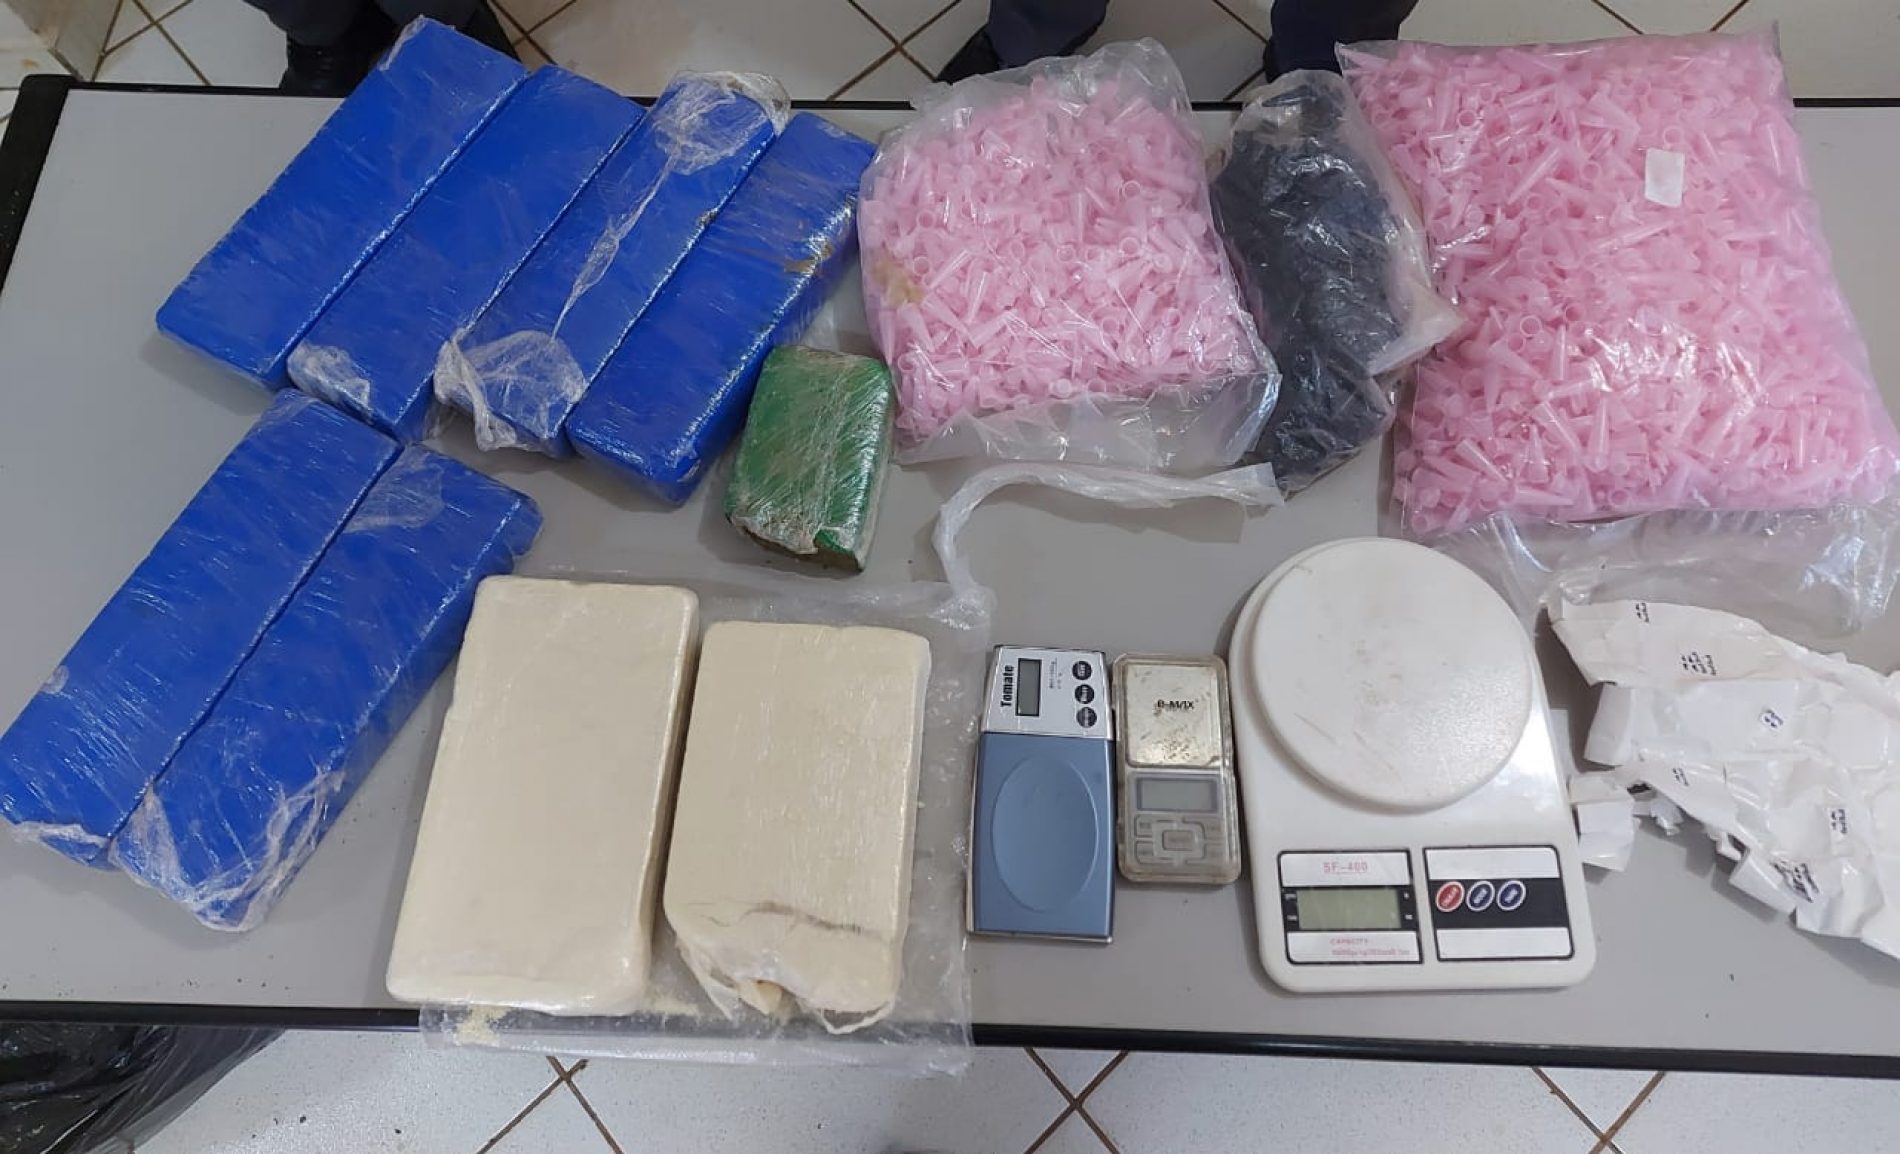 BARRETOS: Polícia apreende sete quilos de drogas, celulares, Tablets e milhares de pinos vazios